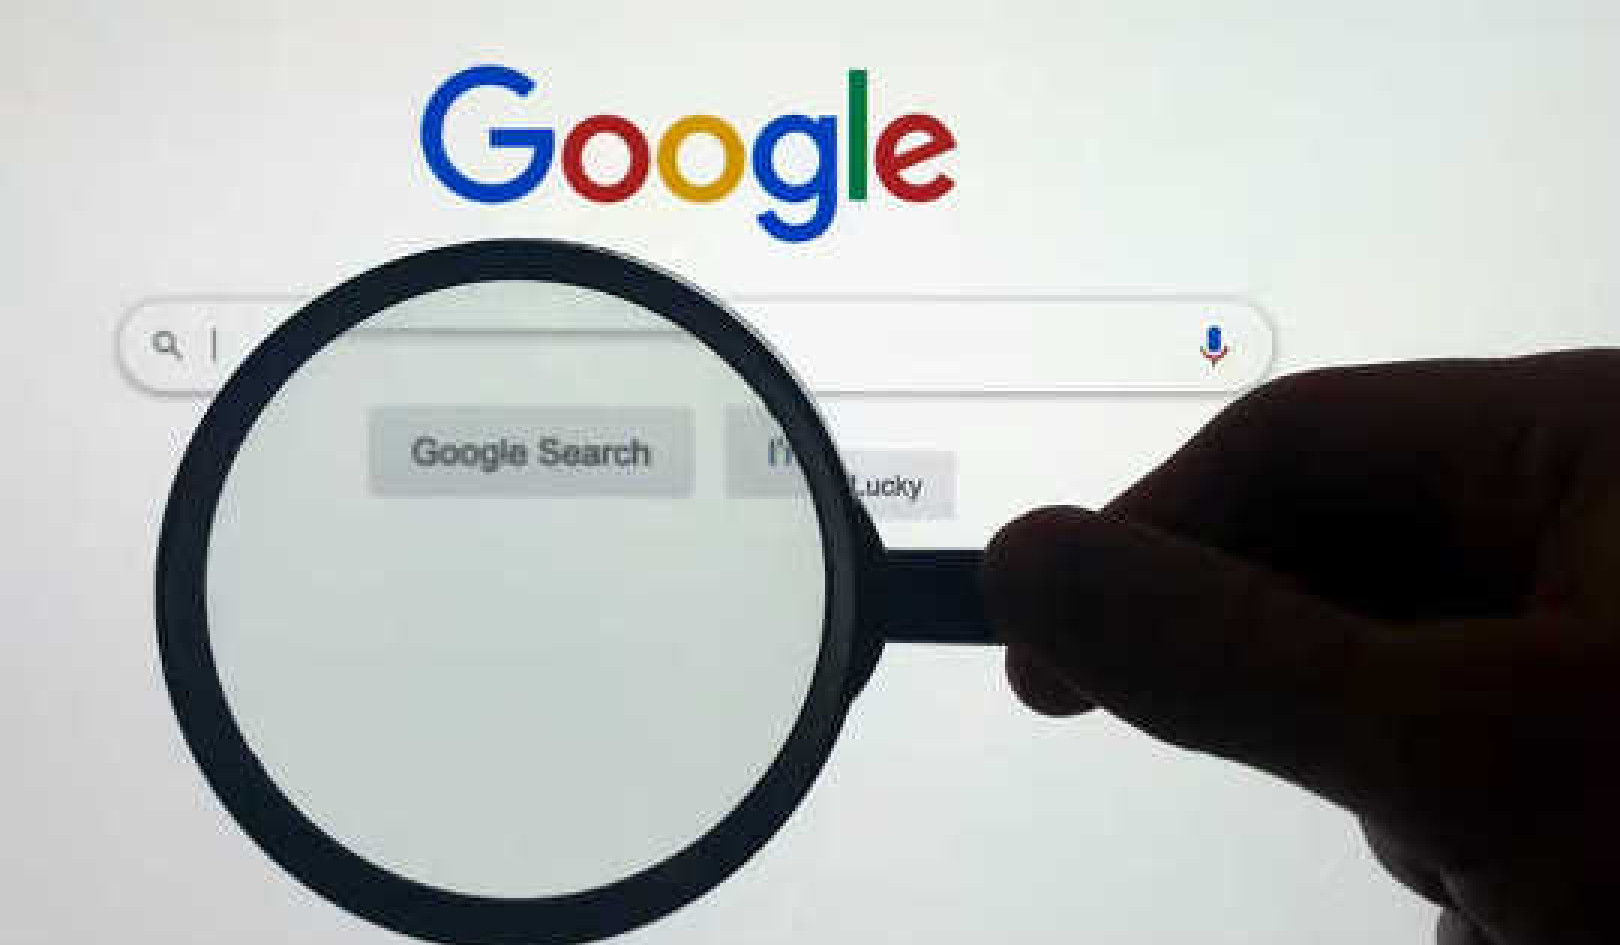 Hier zijn 5 tips om Google op de juiste manier te gebruiken